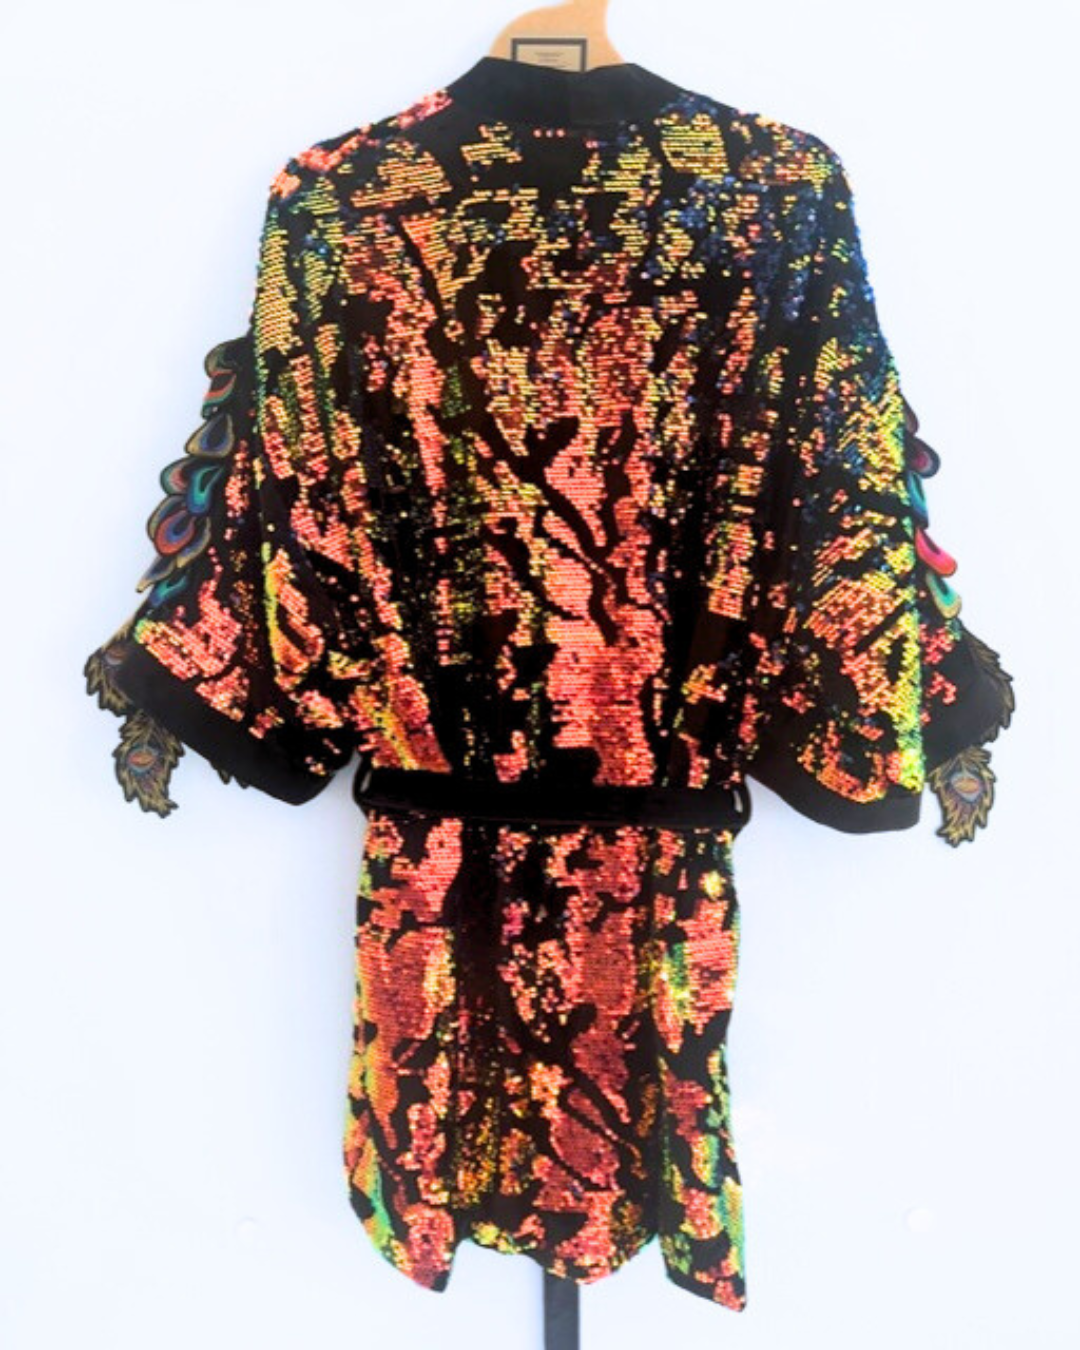 Iridescent Velvet Sequin Kimono Robe with Psychedelic Peacock Sleeve embellishment